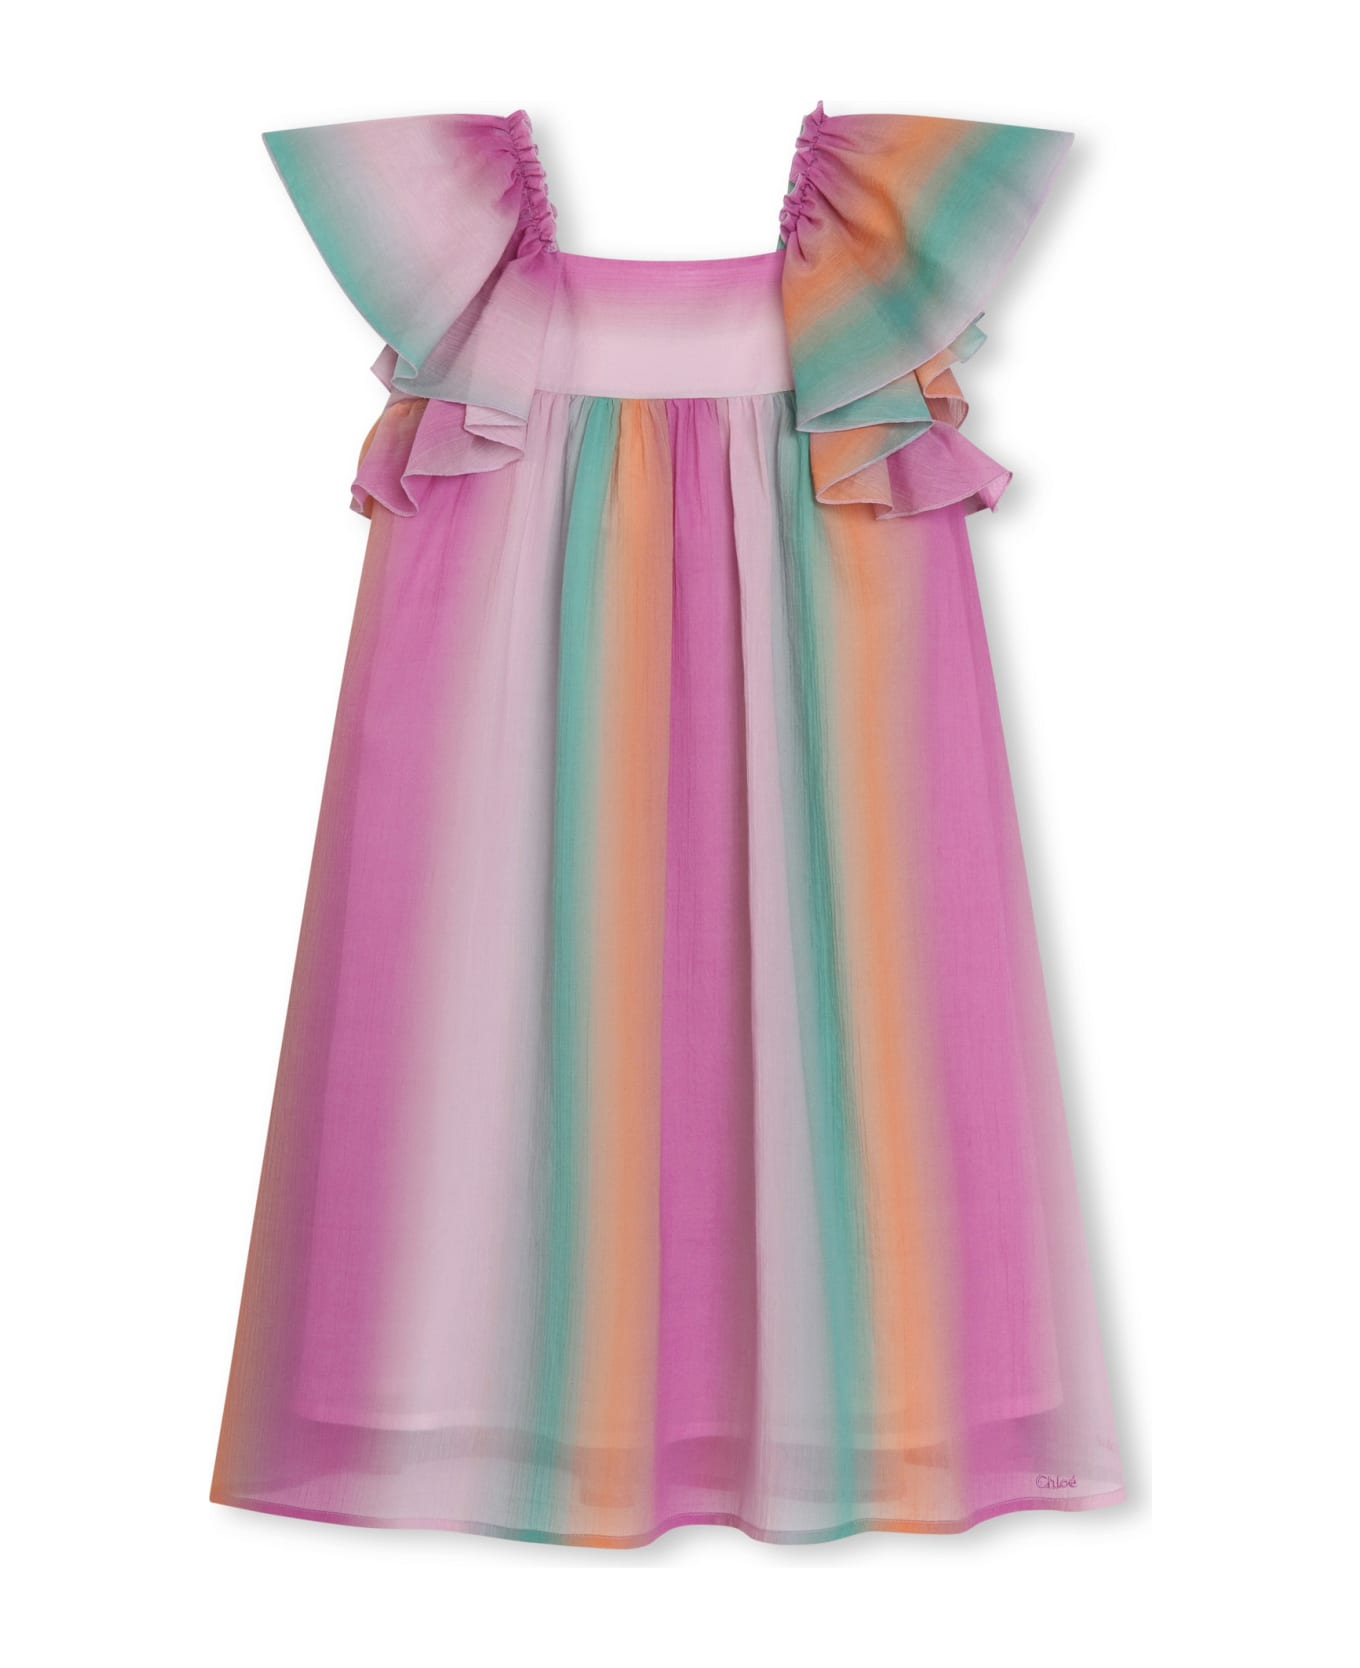 Chloé Striped Dress - Multicolor